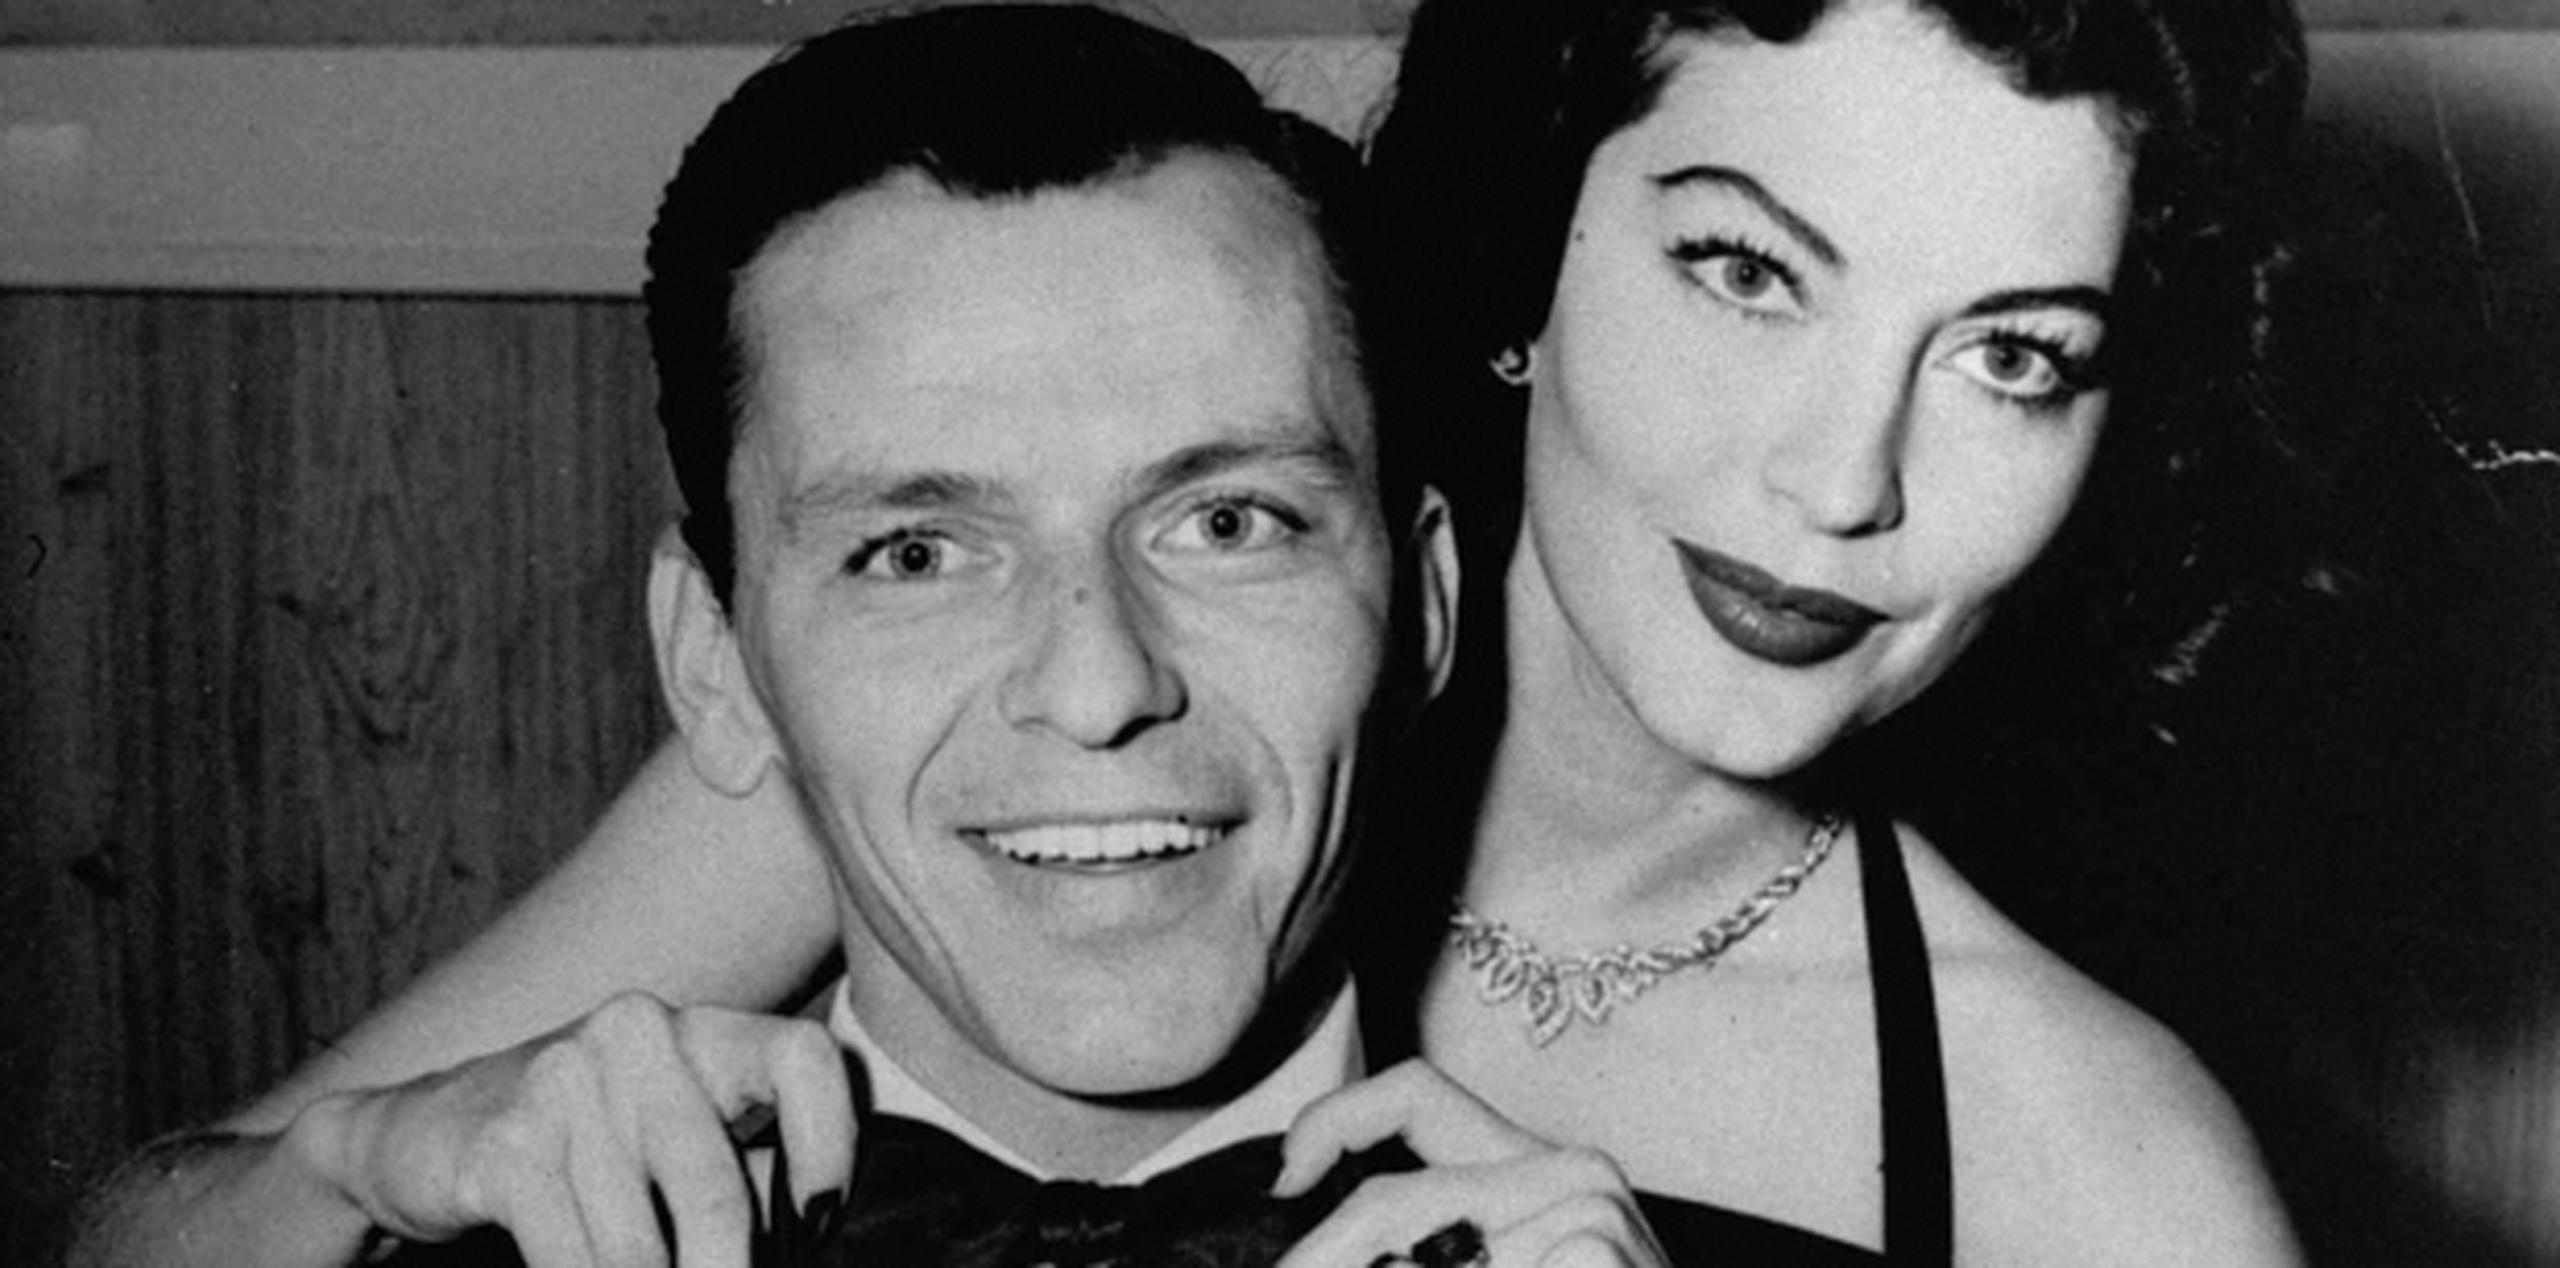 Persiguiendo a la actriz Ava Gardner, en la foto ya convertida en su esposa, Sinatra llegó por primera vez a España, lo que comenzó en una relación tormentosa con el país europeo. (Archivo)